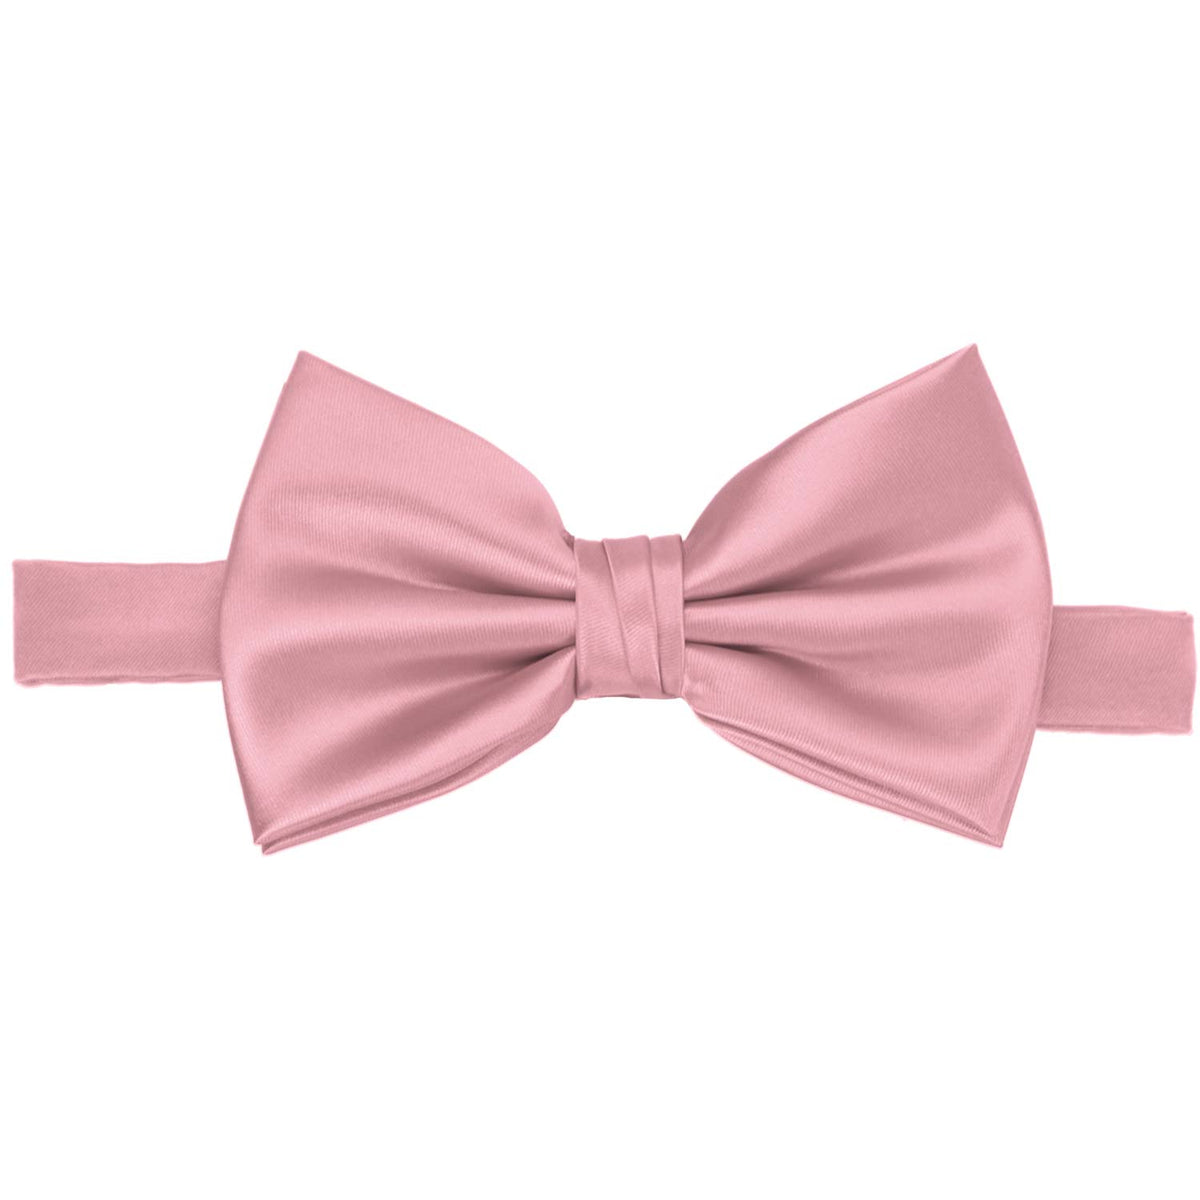 Pink Champagne Premium Bow Tie | Shop at TieMart – TieMart, Inc.